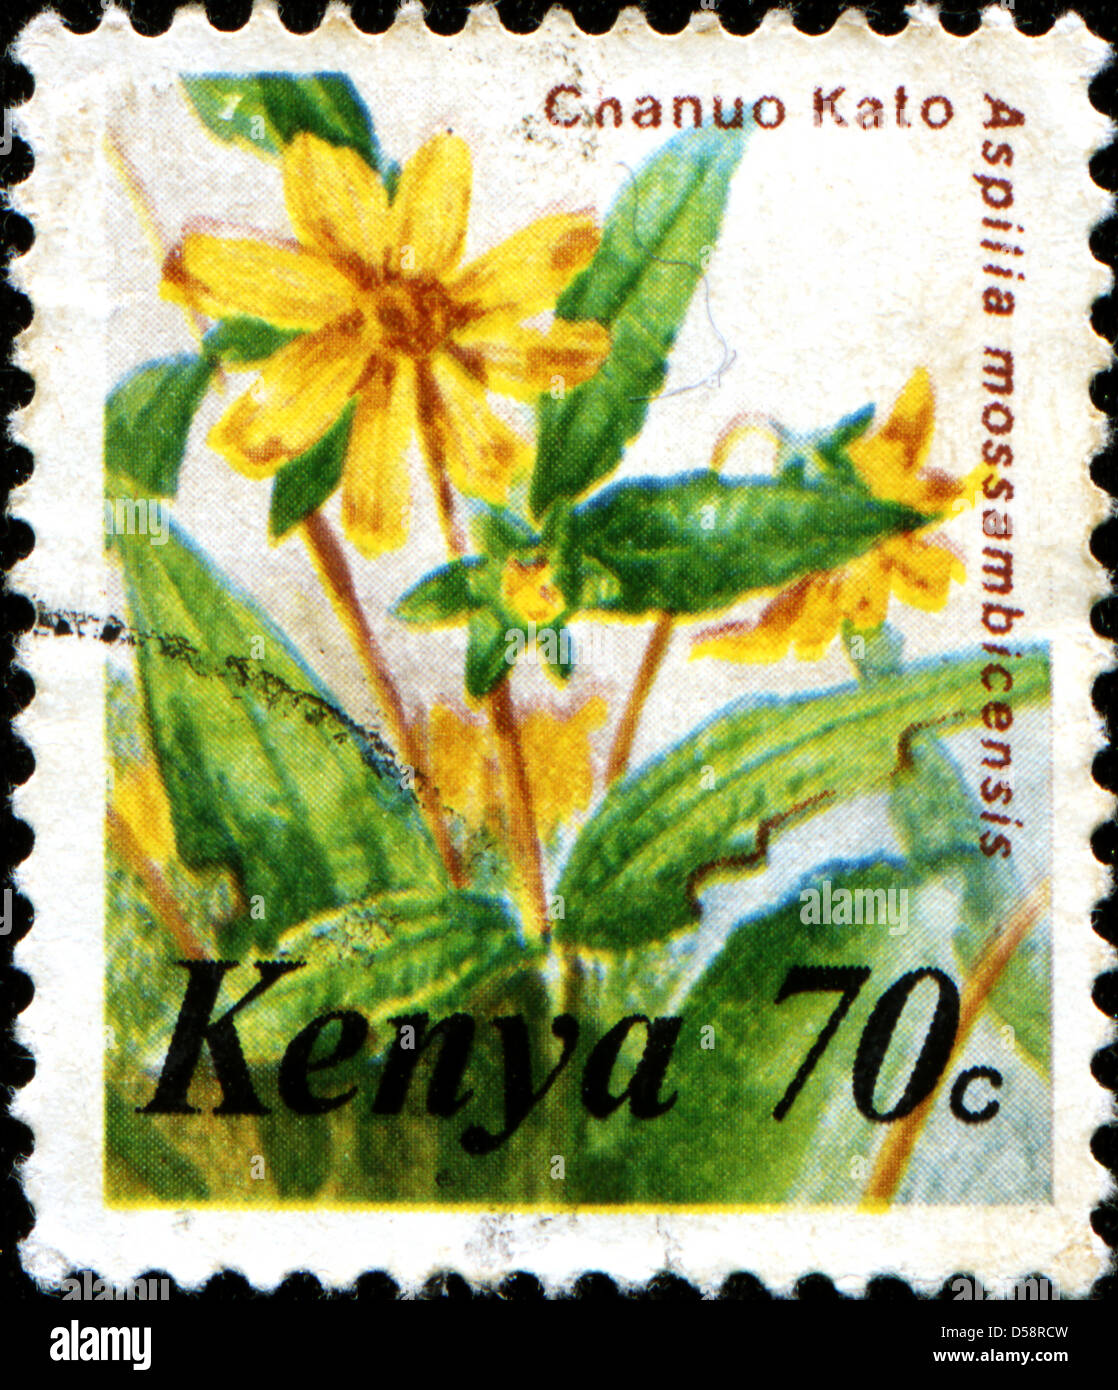 KENYA - CIRCA 1983: A stamp printed in Kenya shows Chanuo Kato - Aspilia mossambicensis, circa 1983 Stock Photo